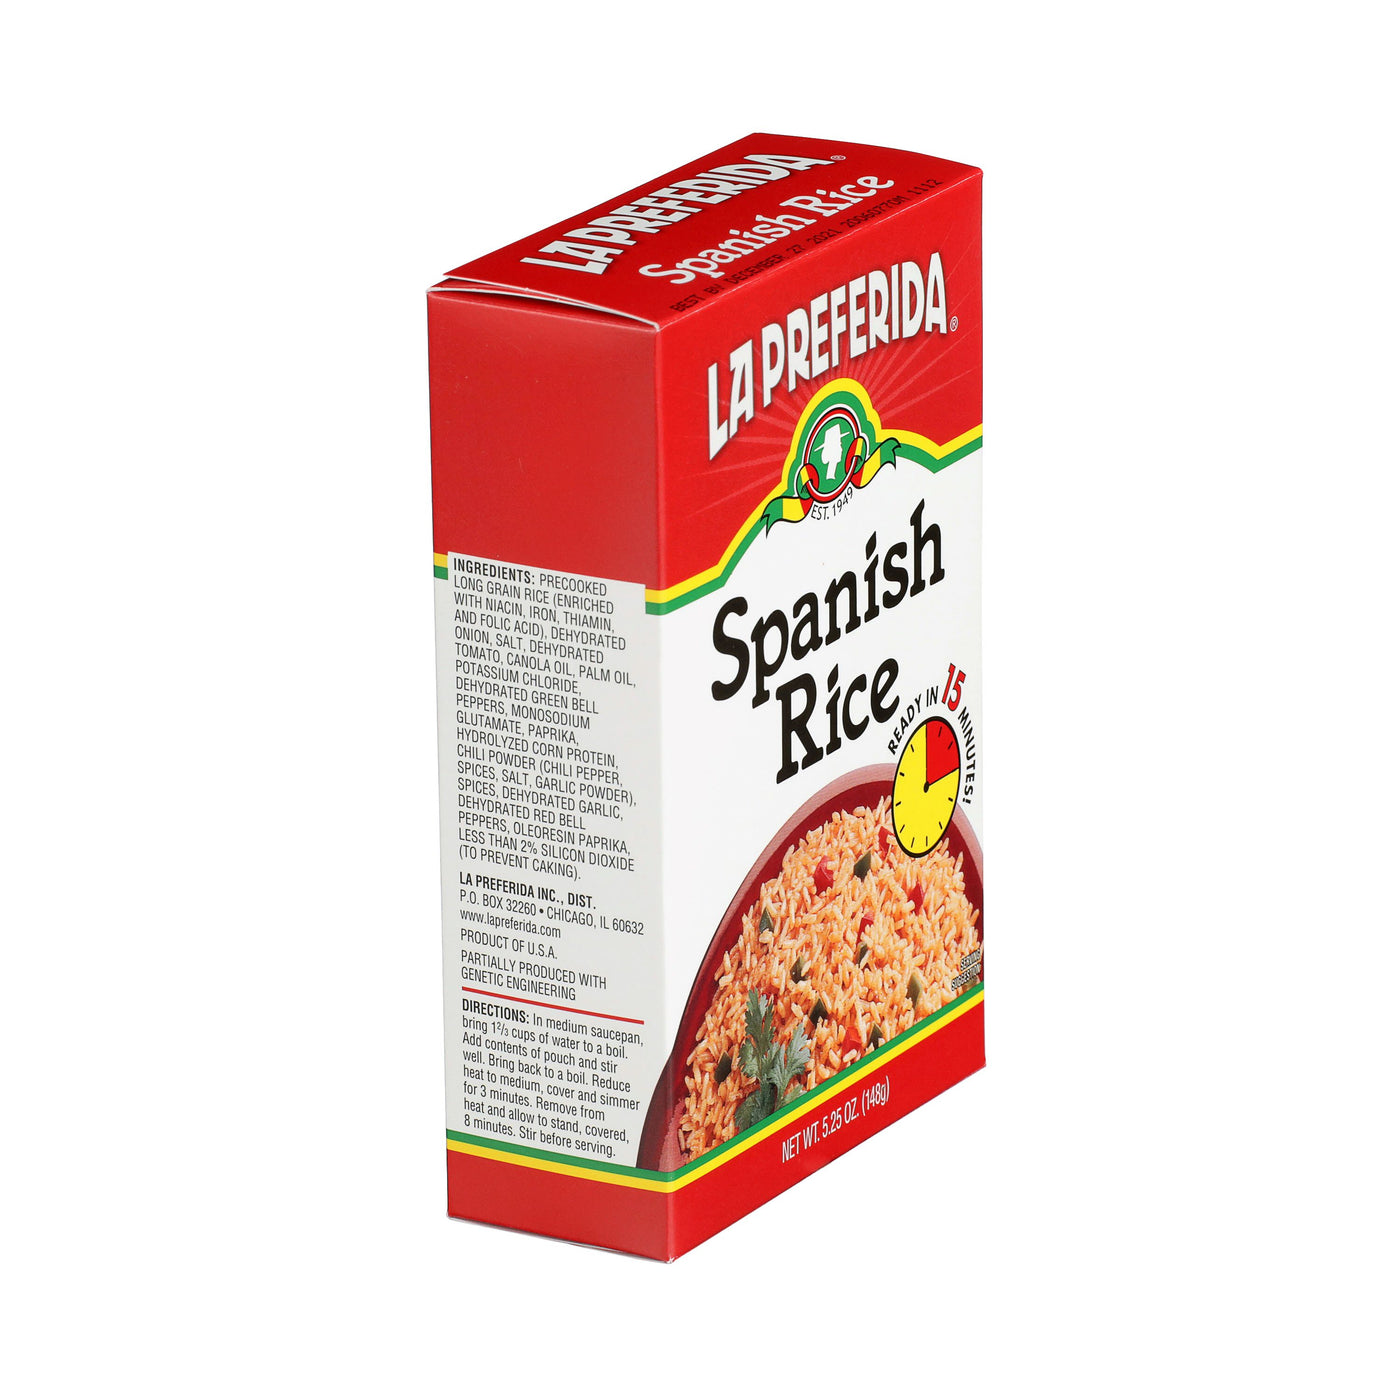 Spanish Rice, Box